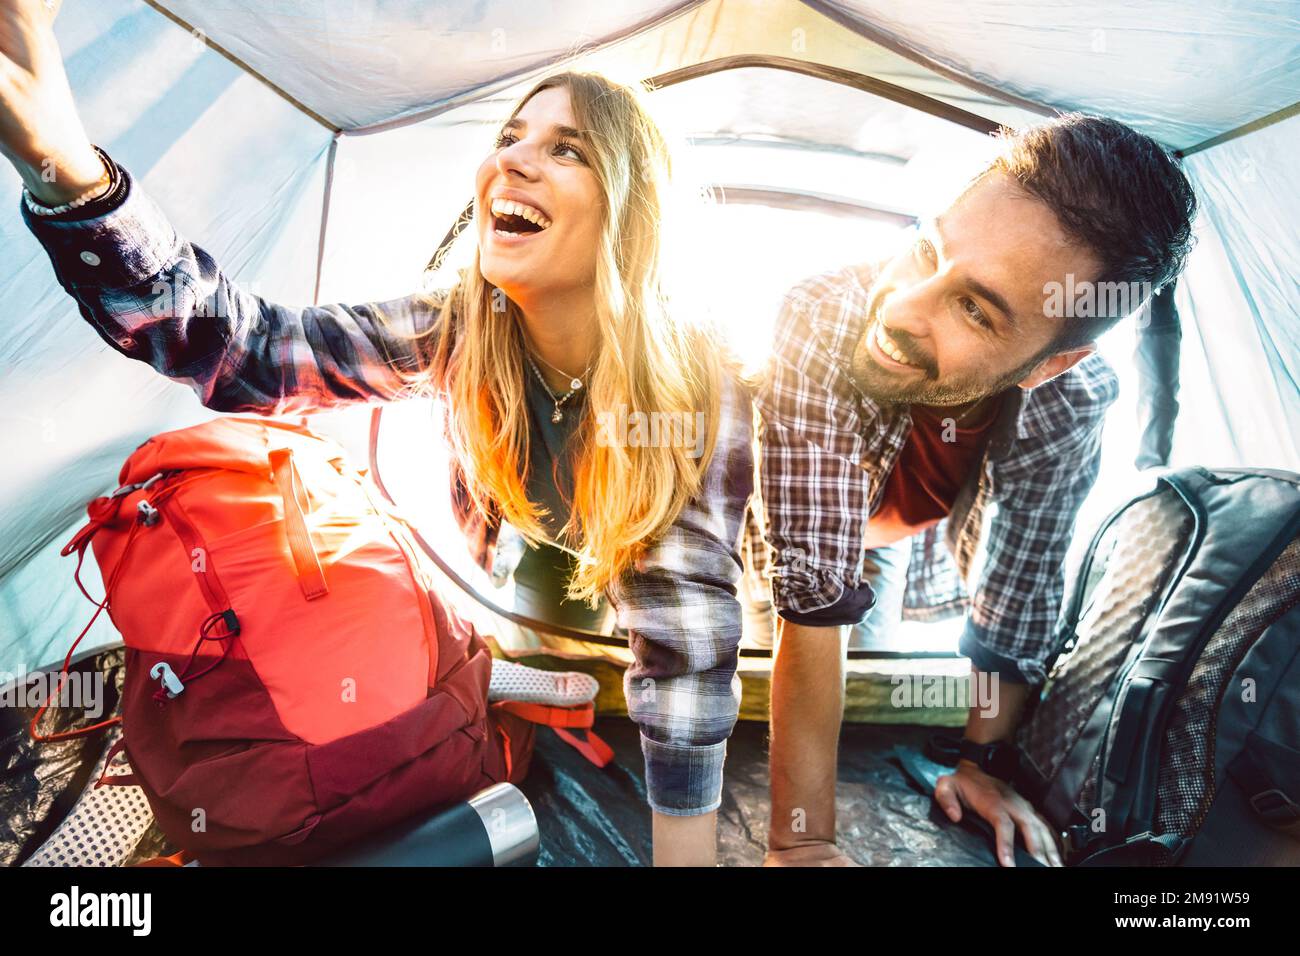 Ein Blick auf ein glückliches Paar im Campingzelt bei Sonnenuntergang - Abenteuer und Liebe Lebensstil Konzept auf Reisen - Junge Leute haben Spaß Stockfoto